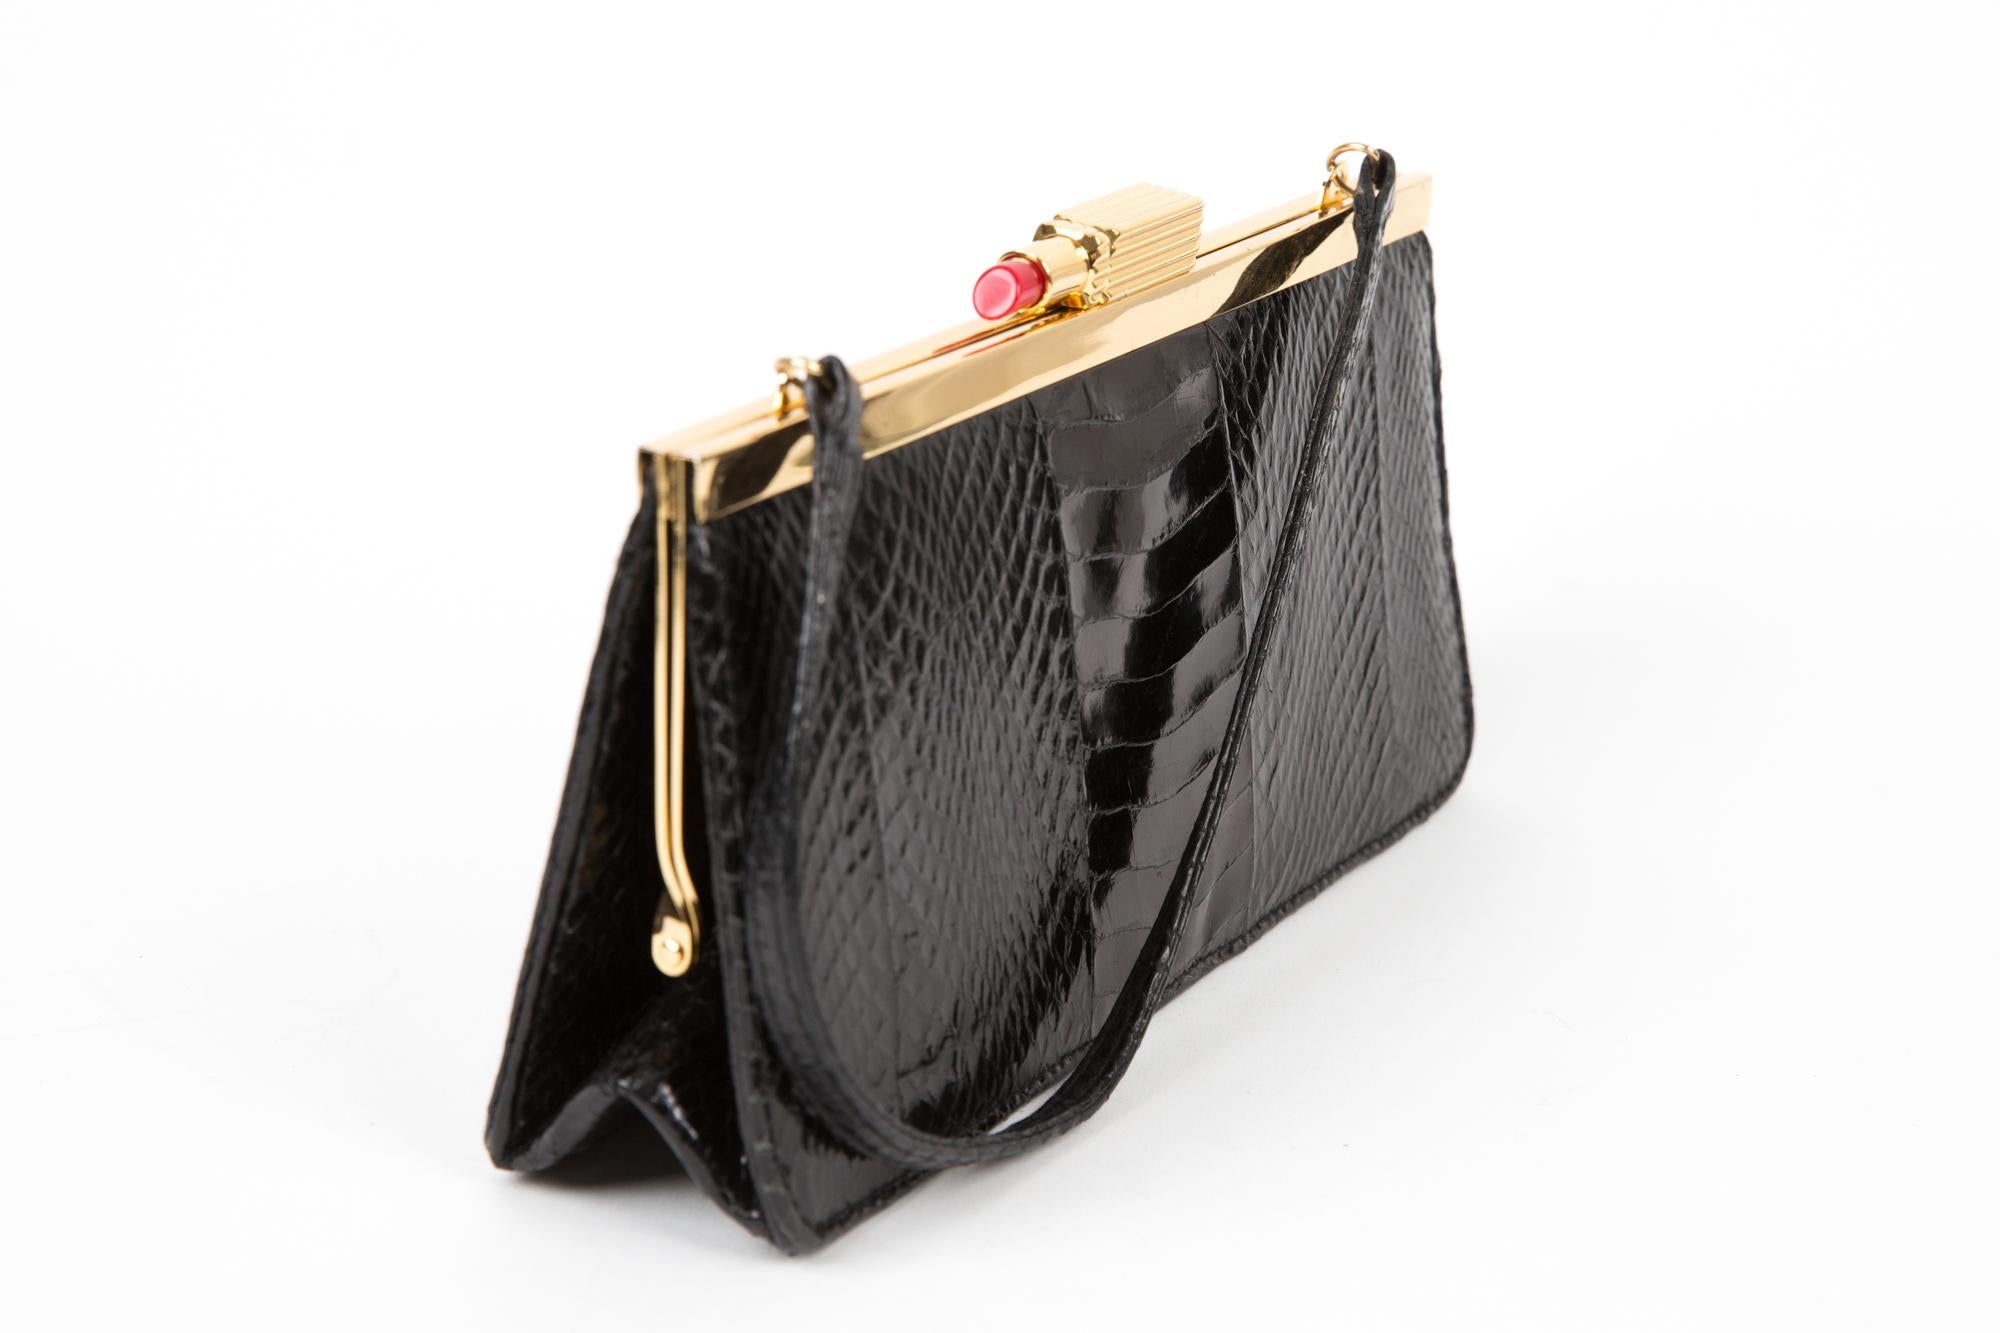 Schwarze Abendhandtasche aus Leder von Lulu Guinness mit folgenden Eigenschaften: ausgefallener Lippenstiftverschluss oben, Henkel oben, goldfarbene Beschläge und eine aufgestickte Botschaft im Inneren der Tasche.
Länge : 9.4in (24cm)
Höhe: 11 cm